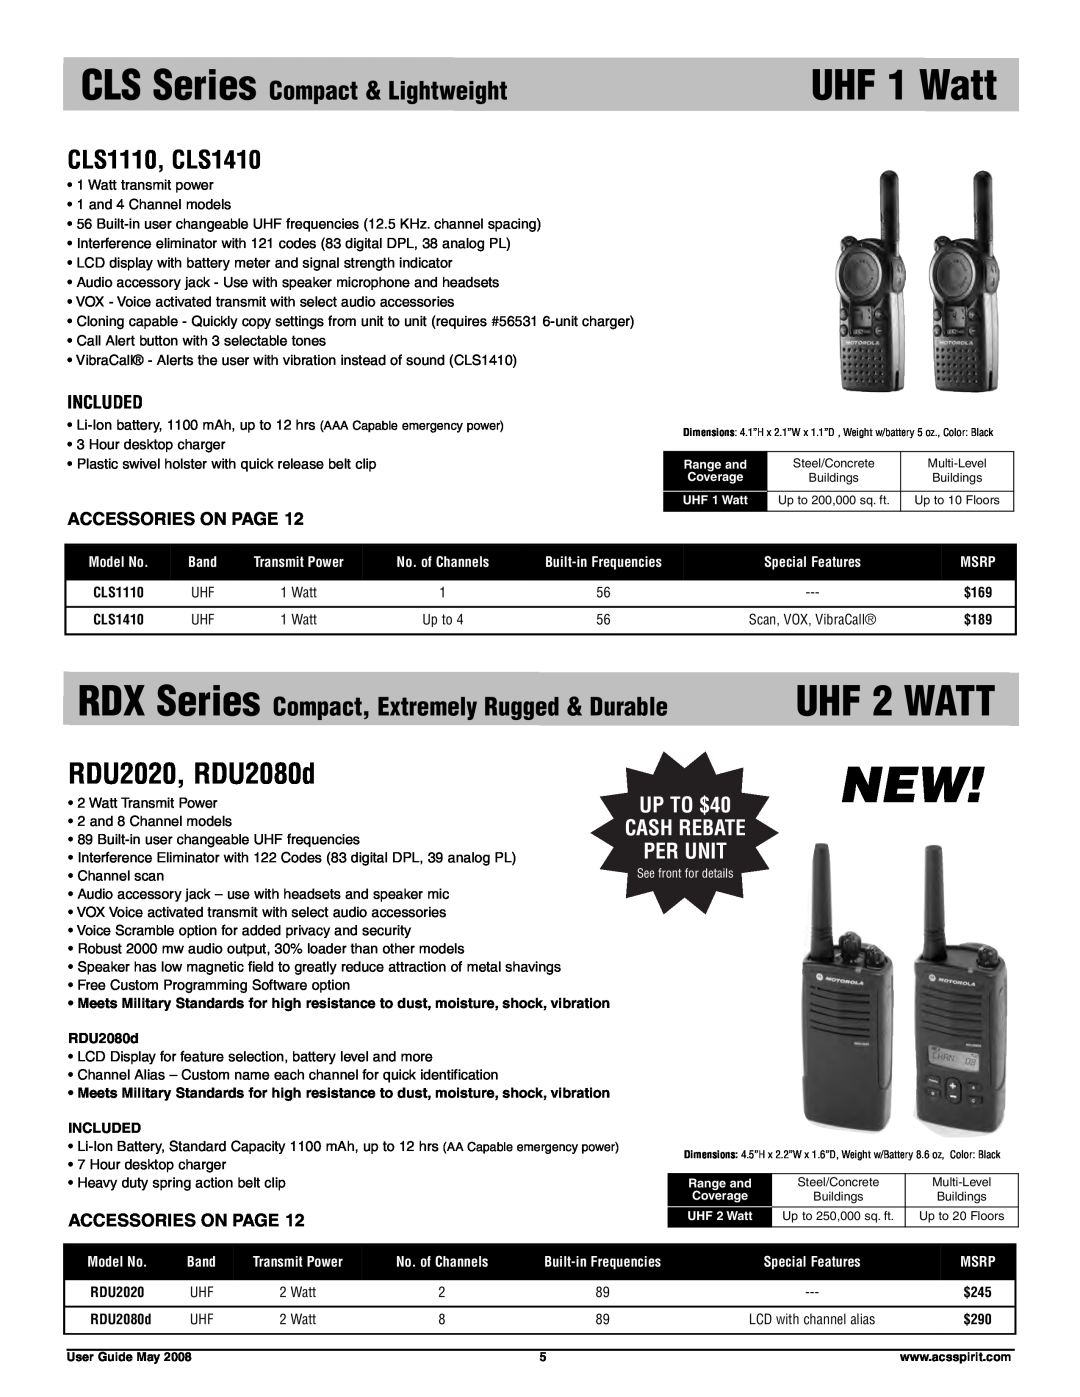 Motorola RDU4160D UHF 2 WATT, RDU2020, RDU2080d, CLS Series Compact & Lightweight, UP TO $40 CASH REBATE PER UNIT, $245 